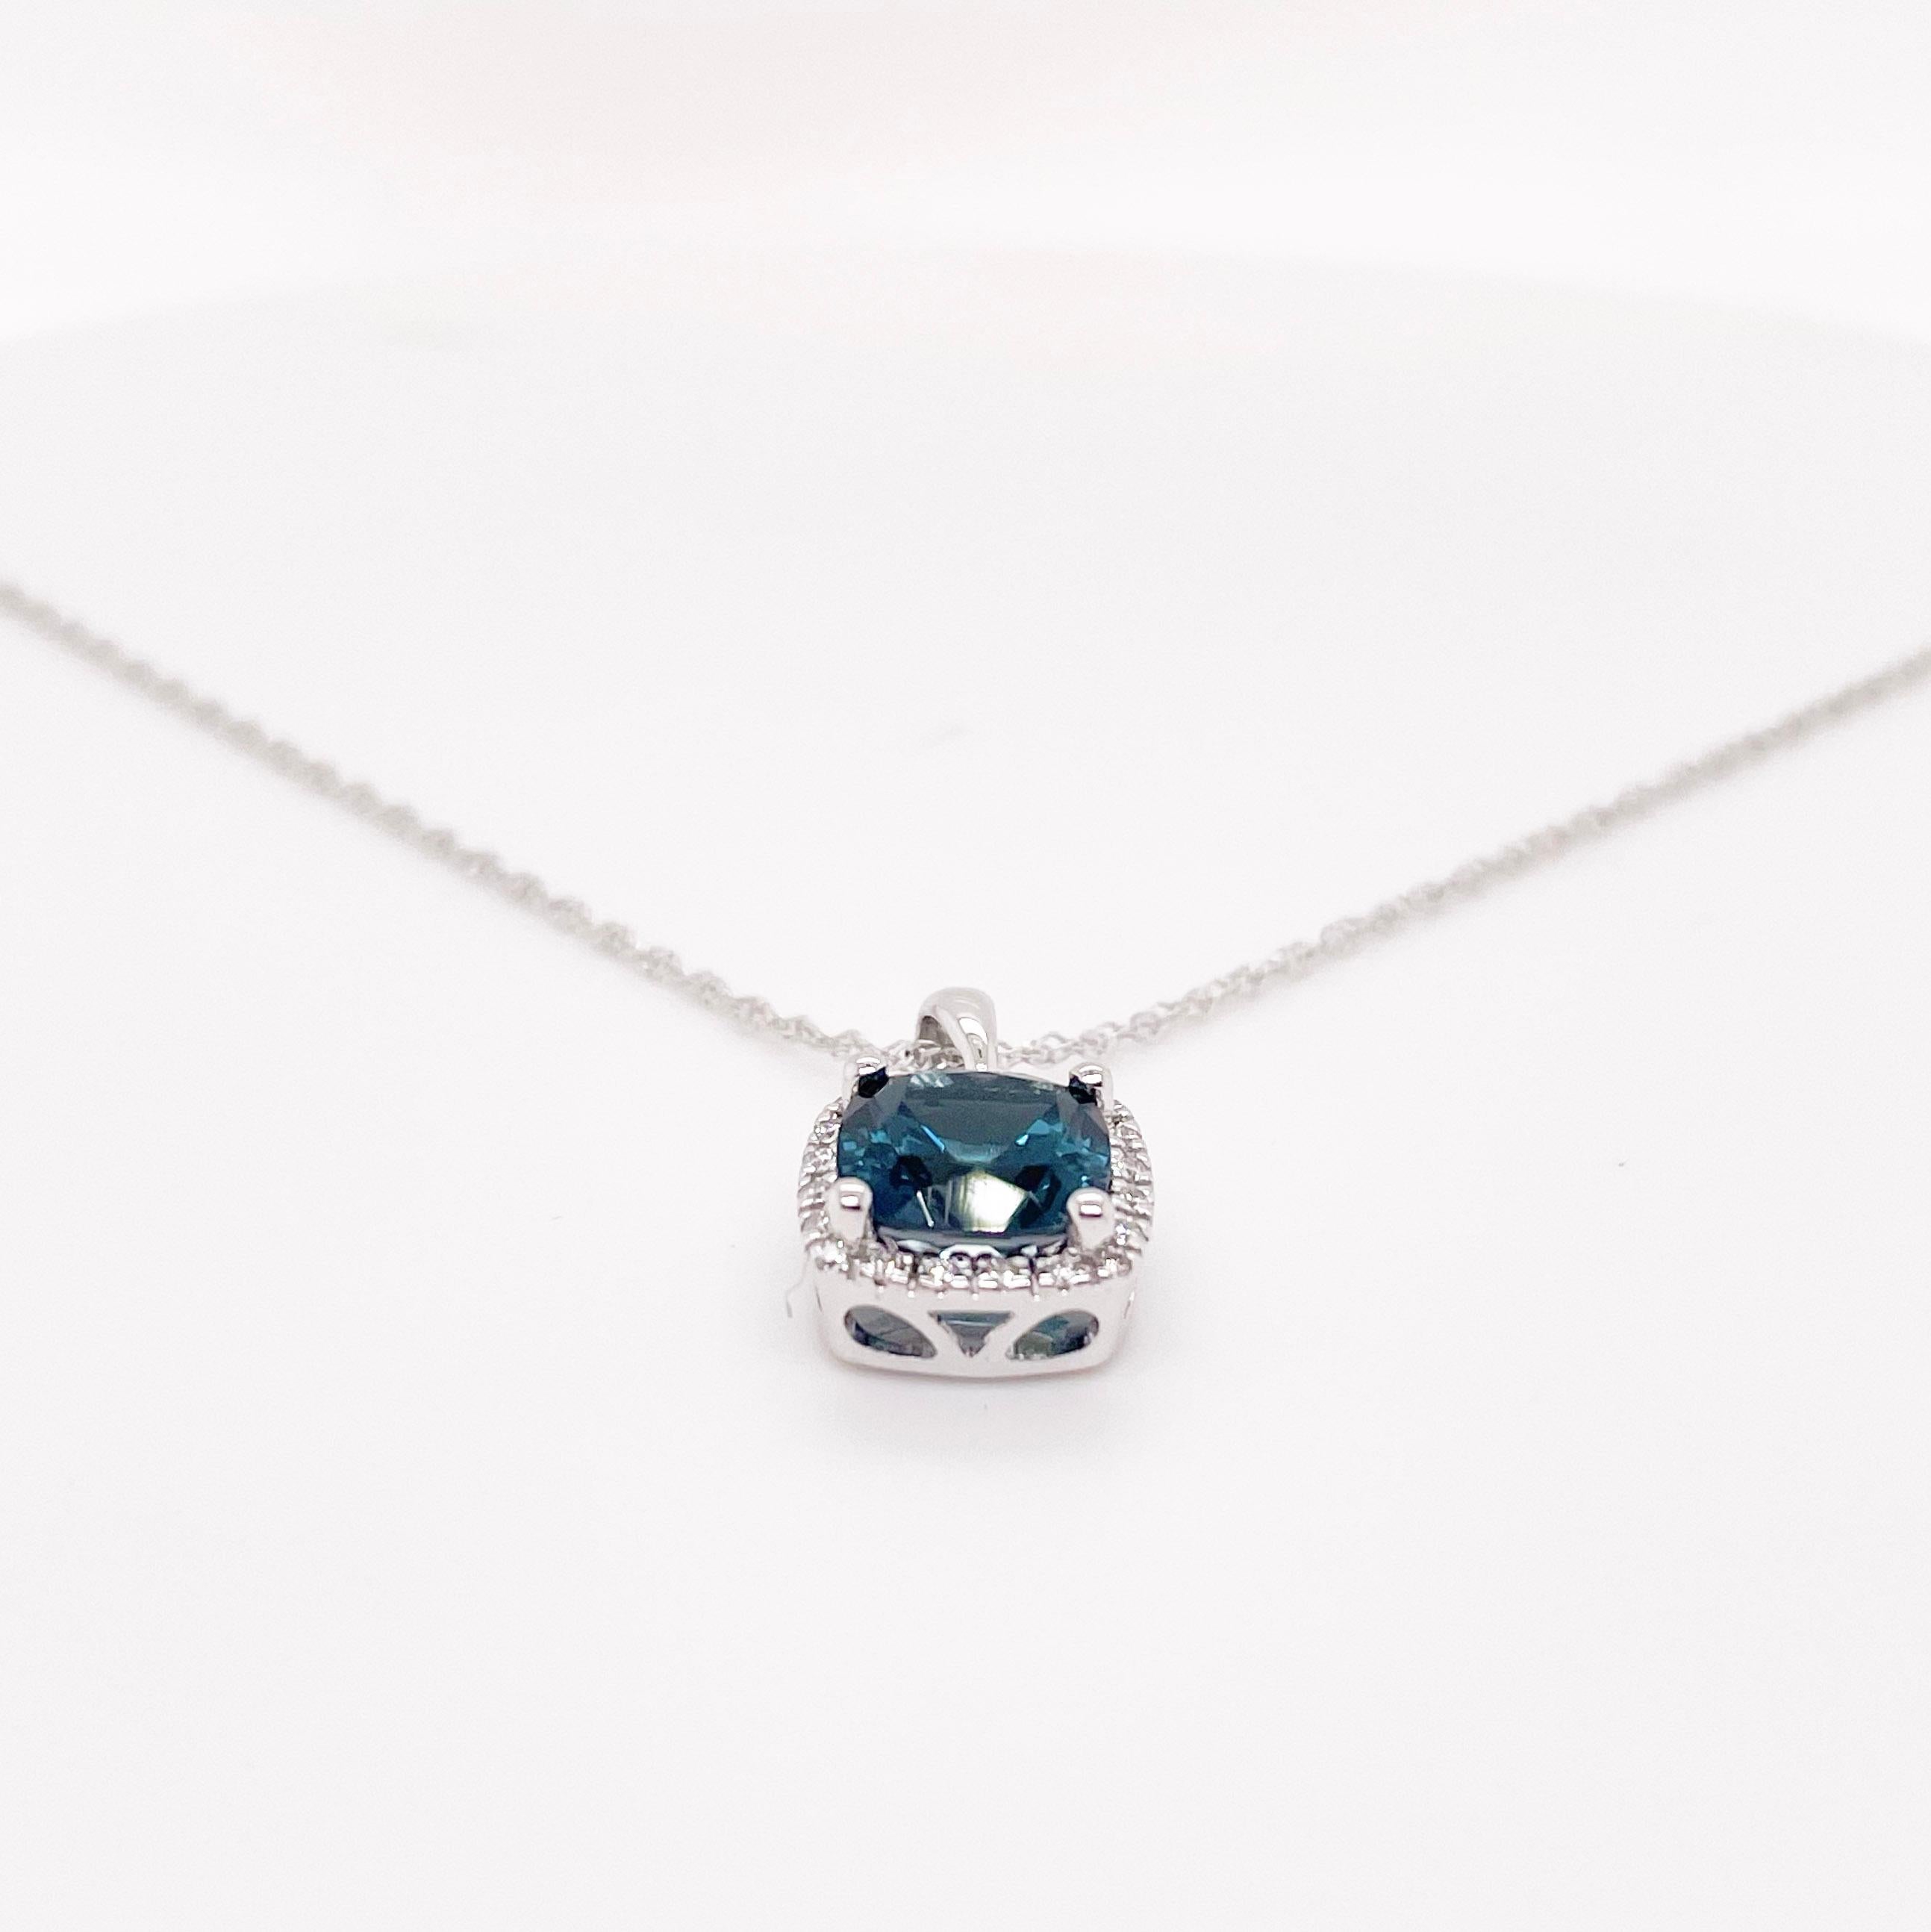 Contemporain Collier de topaze bleue et halo de diamants en or blanc 14 carats, pierres précieuses de topaze bleu nuit en vente